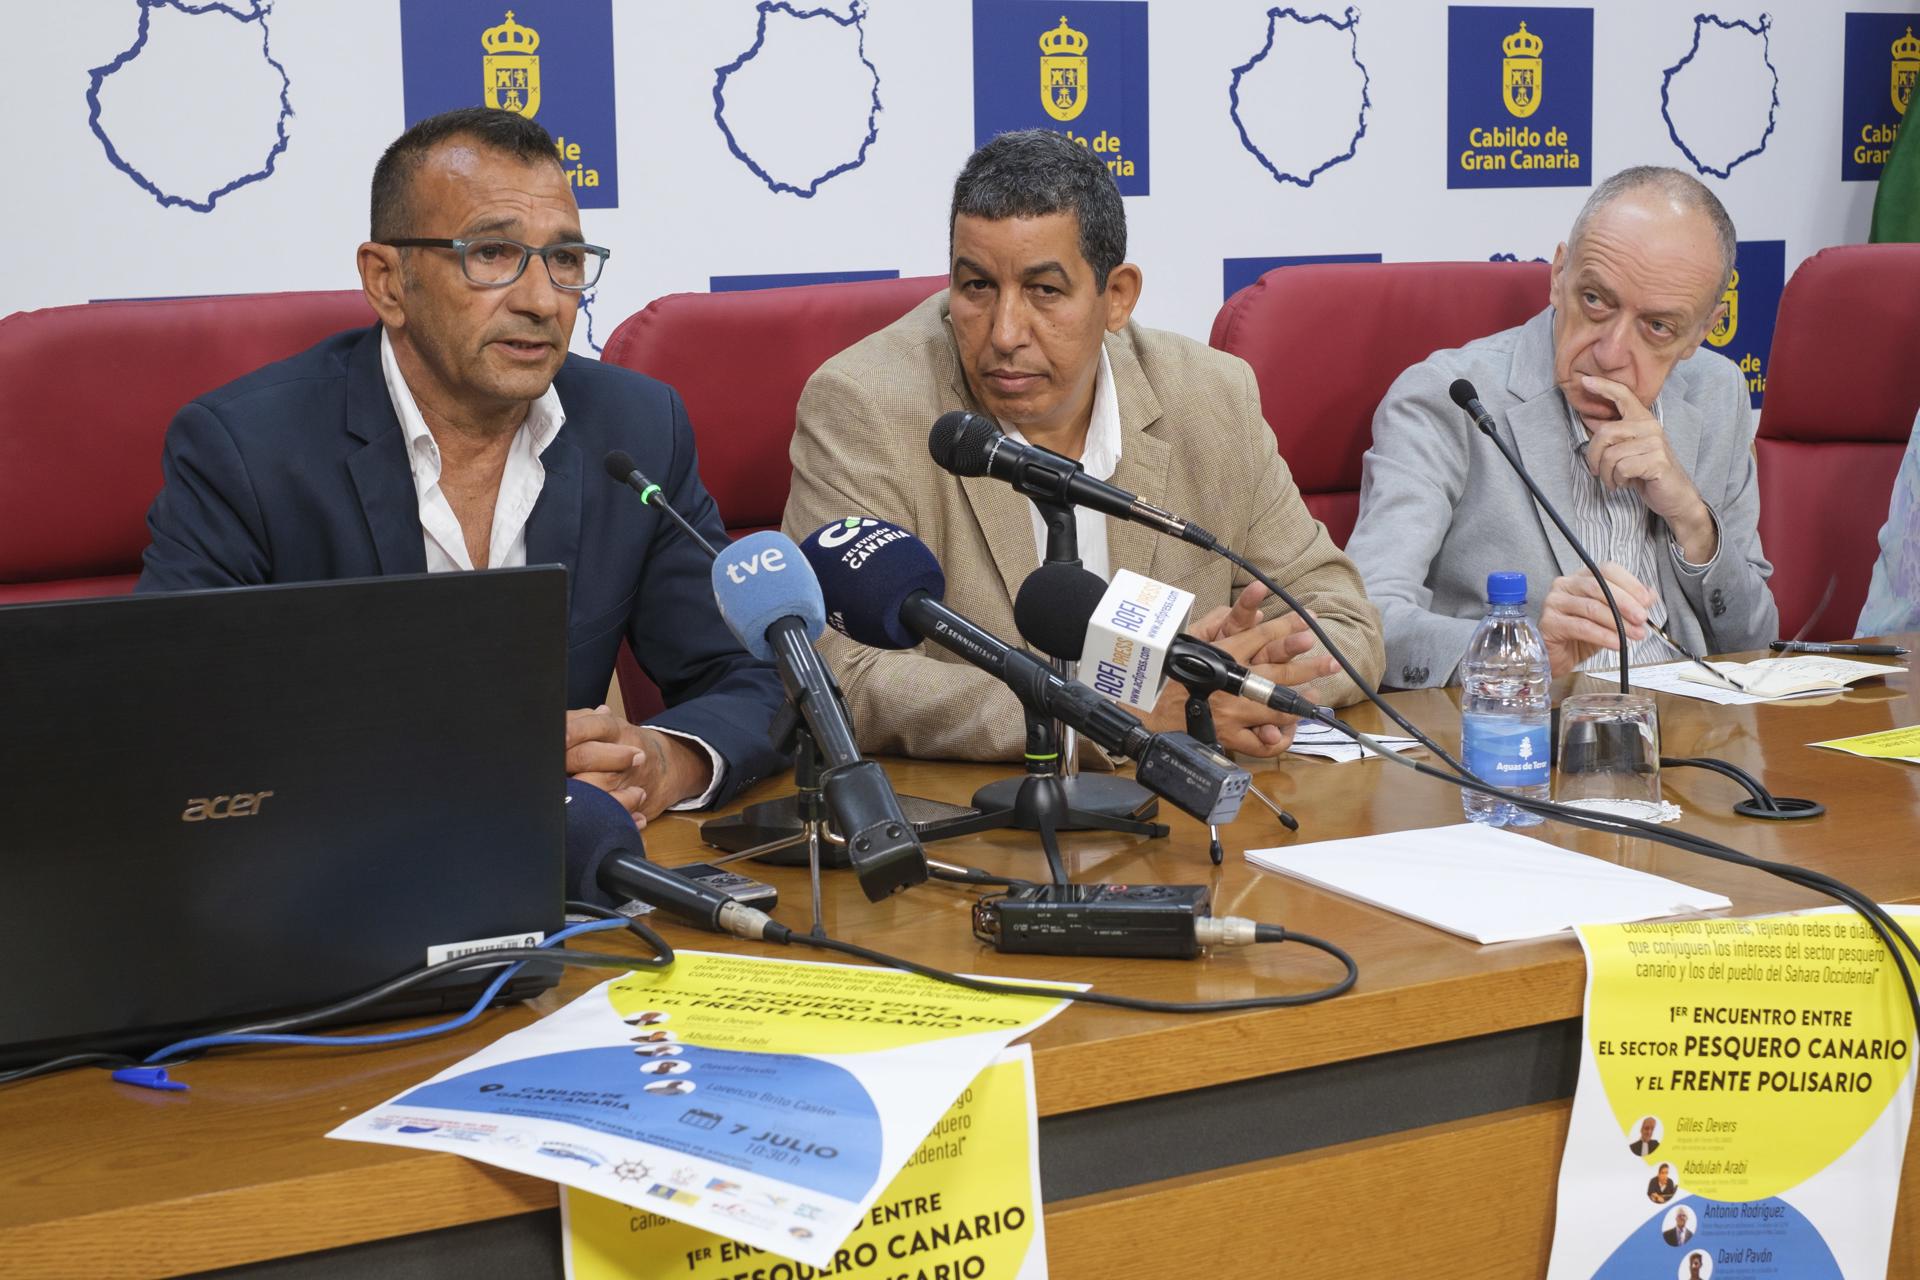 El representante del Frente Polisario en España, Abdulah Arabi (c), y su abogado ante los tribunales europeos, Gilles Devers (d), han participado este viernes en un encuentro con el sector pesquero de Canarias sobre la situación del caladero del Sahara, ante el fin del acuerdo Bruselas-Marruecos, que vence el 17 de julio. EFE/Ángel Medina G.